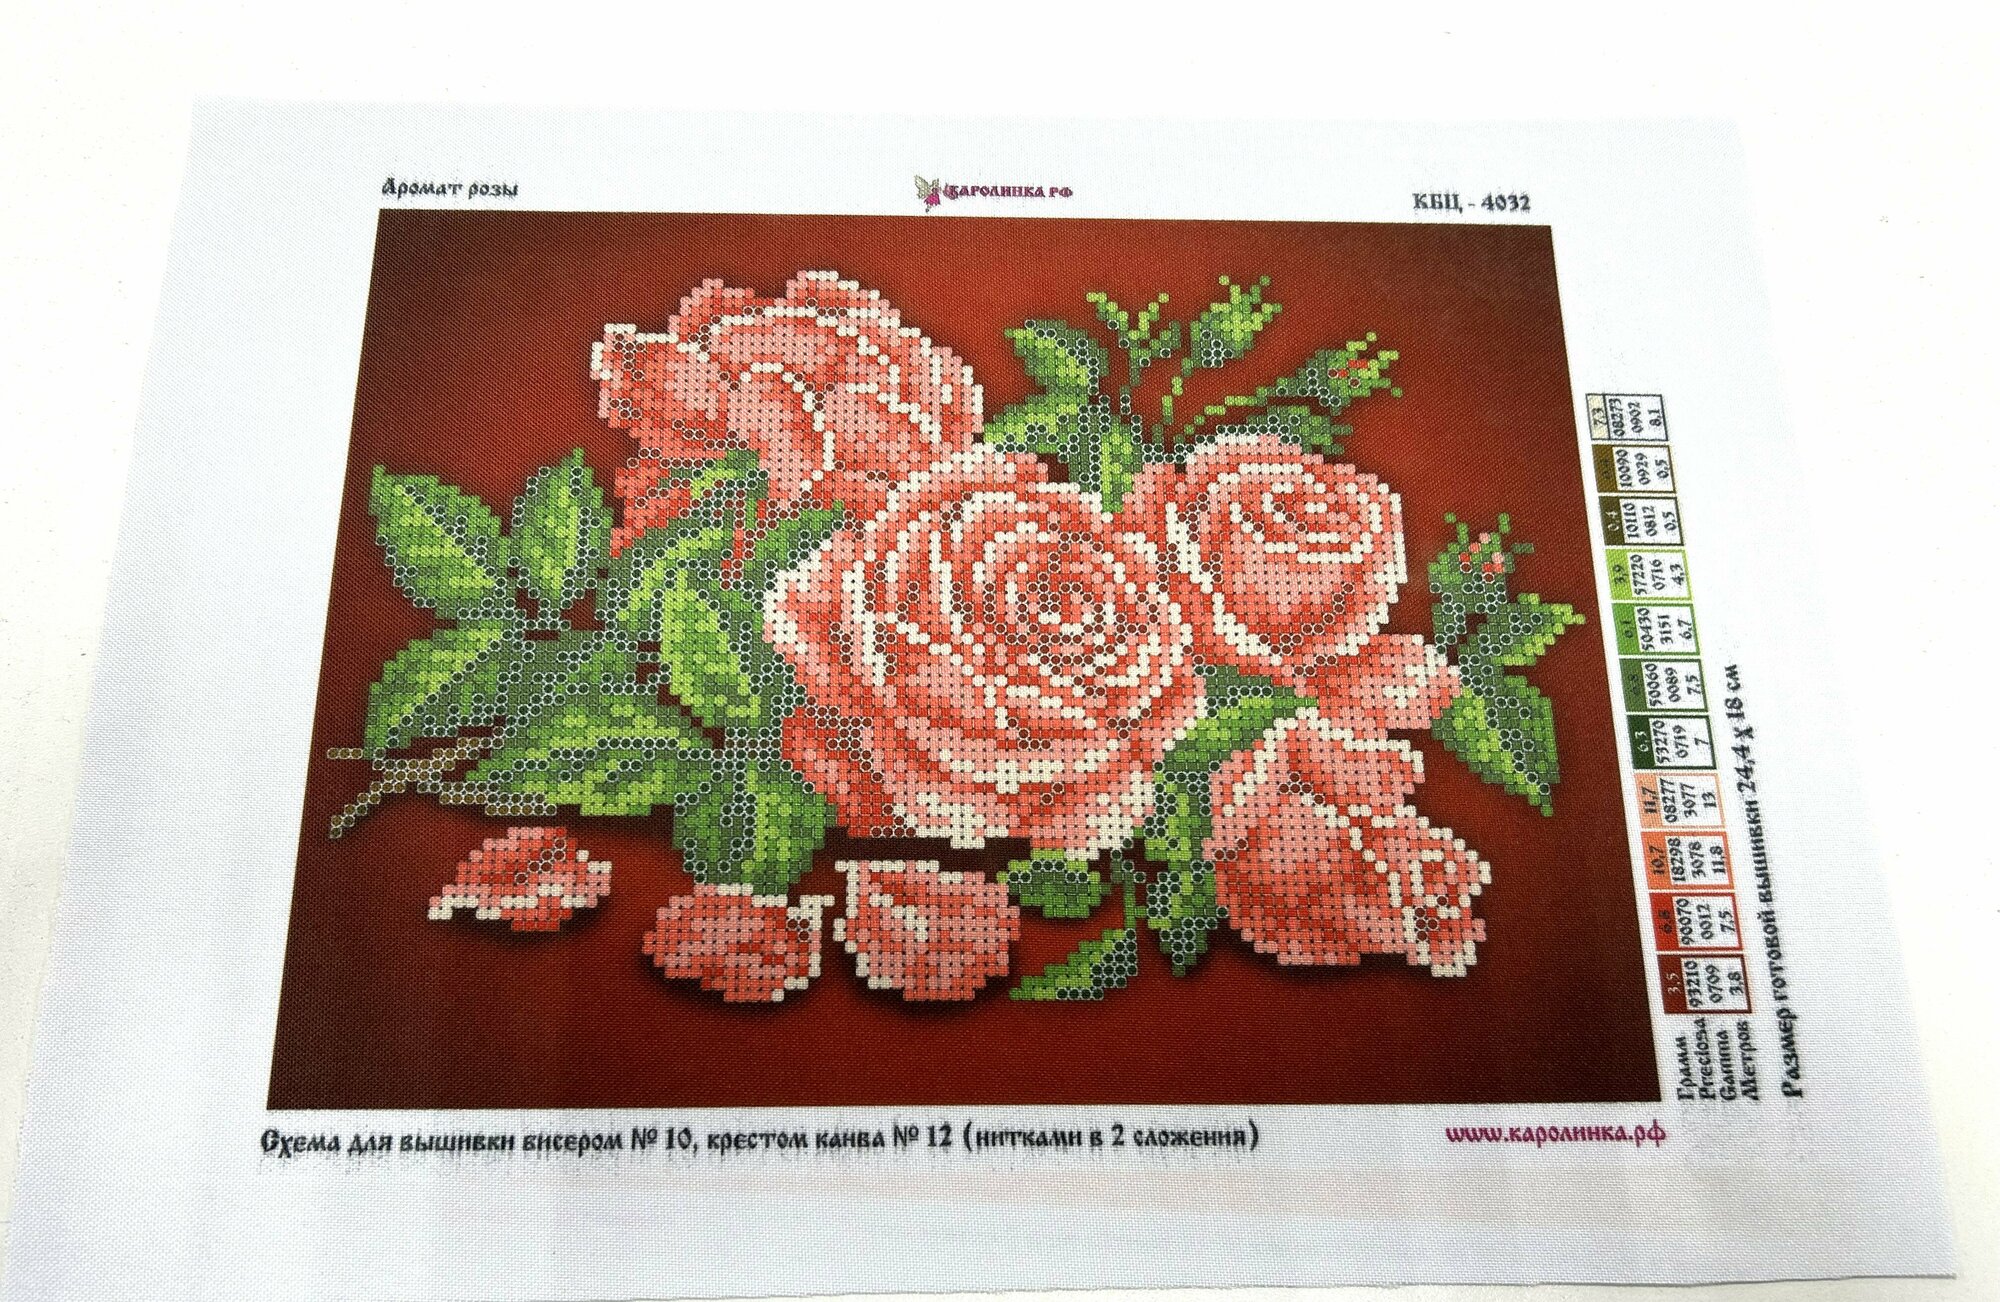 Ткань-схема для вышивки бисером или крестом Каролинка "Аромат розы", 18 х 24,4 см